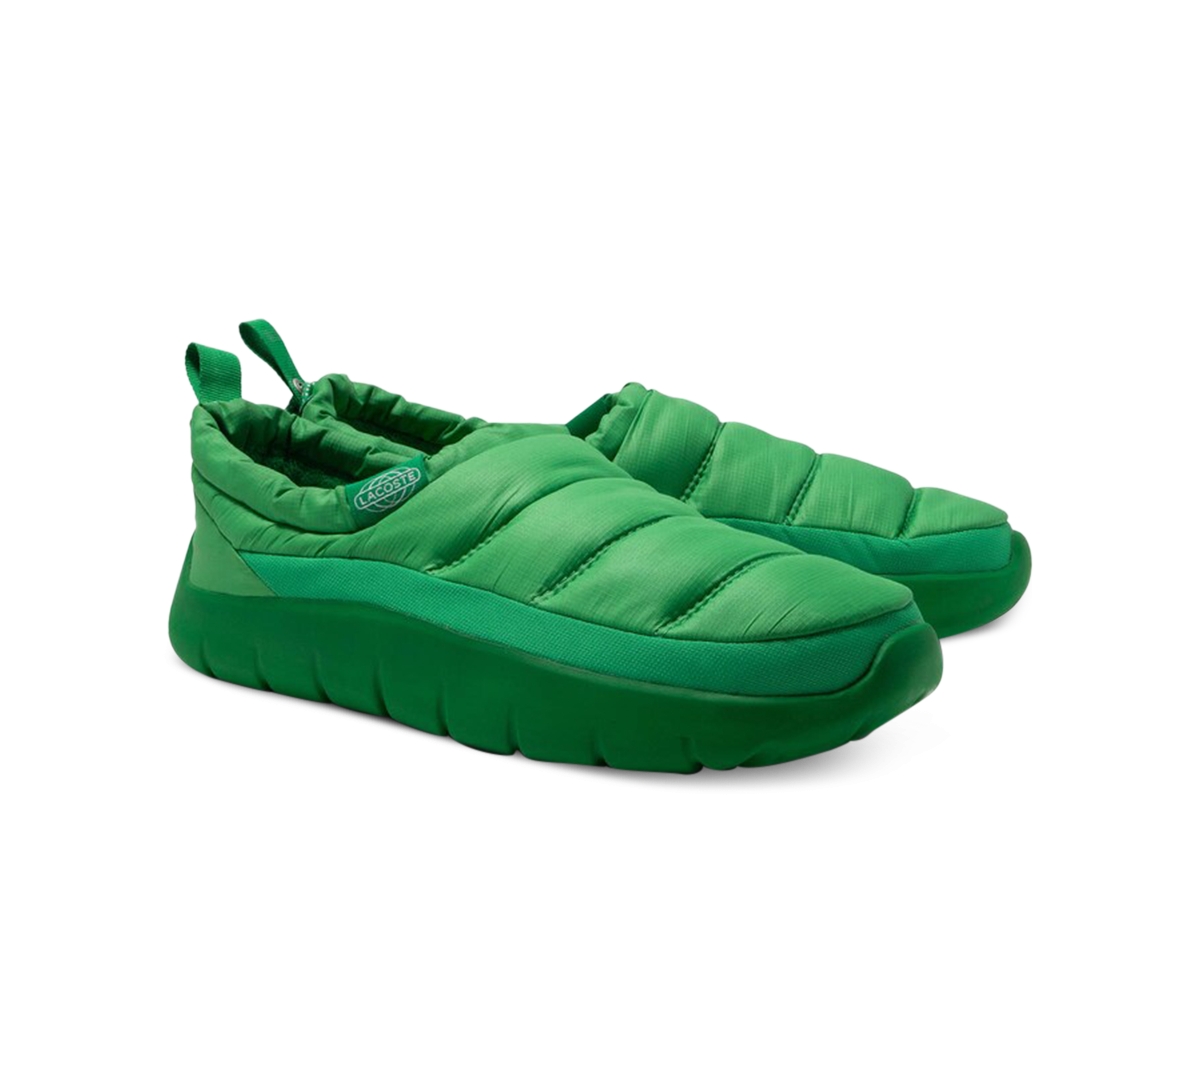 Men's Serve Puffer Slippers - Green/Green